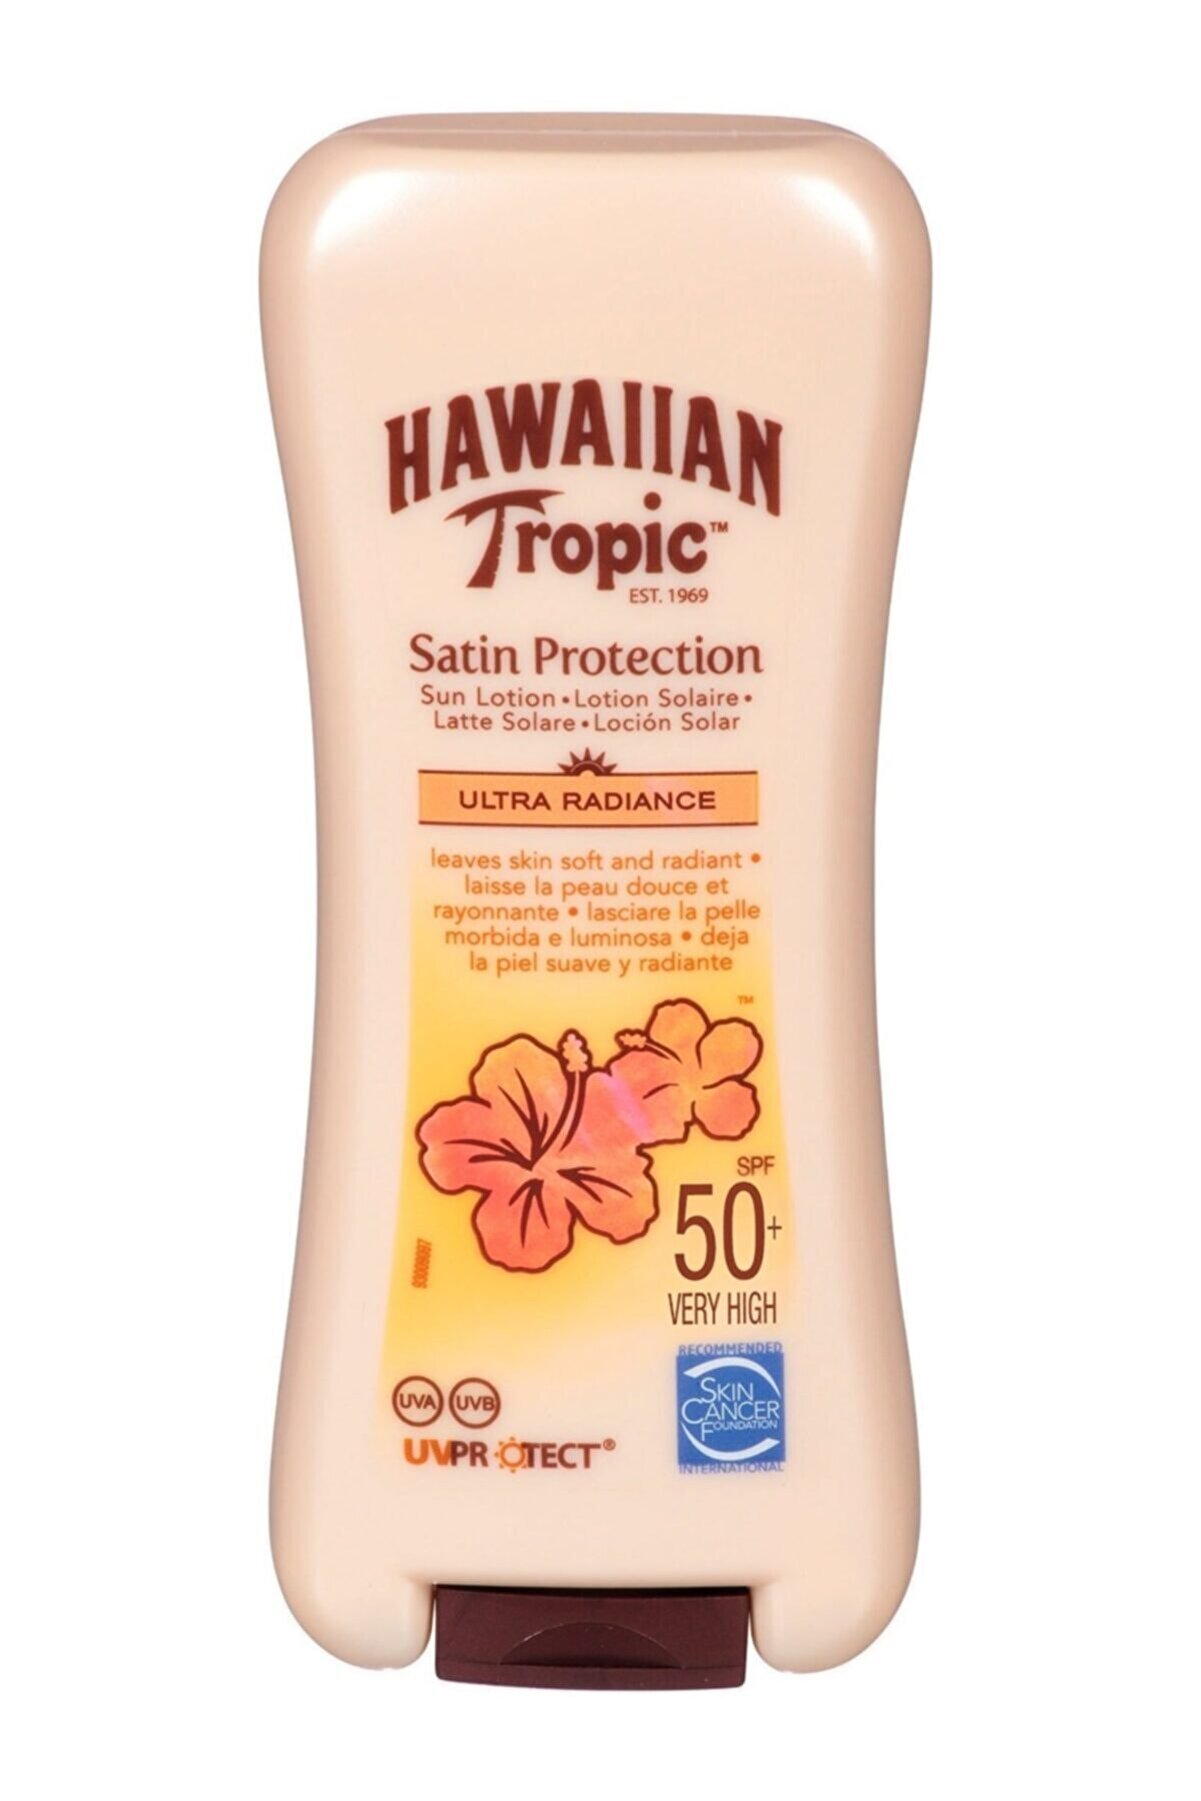 Hawaiian Tropic Hawaııan Koruyucu Güneş Losyonu Satin Protectıon Nspf 50+ 200 Ml 5099821001476